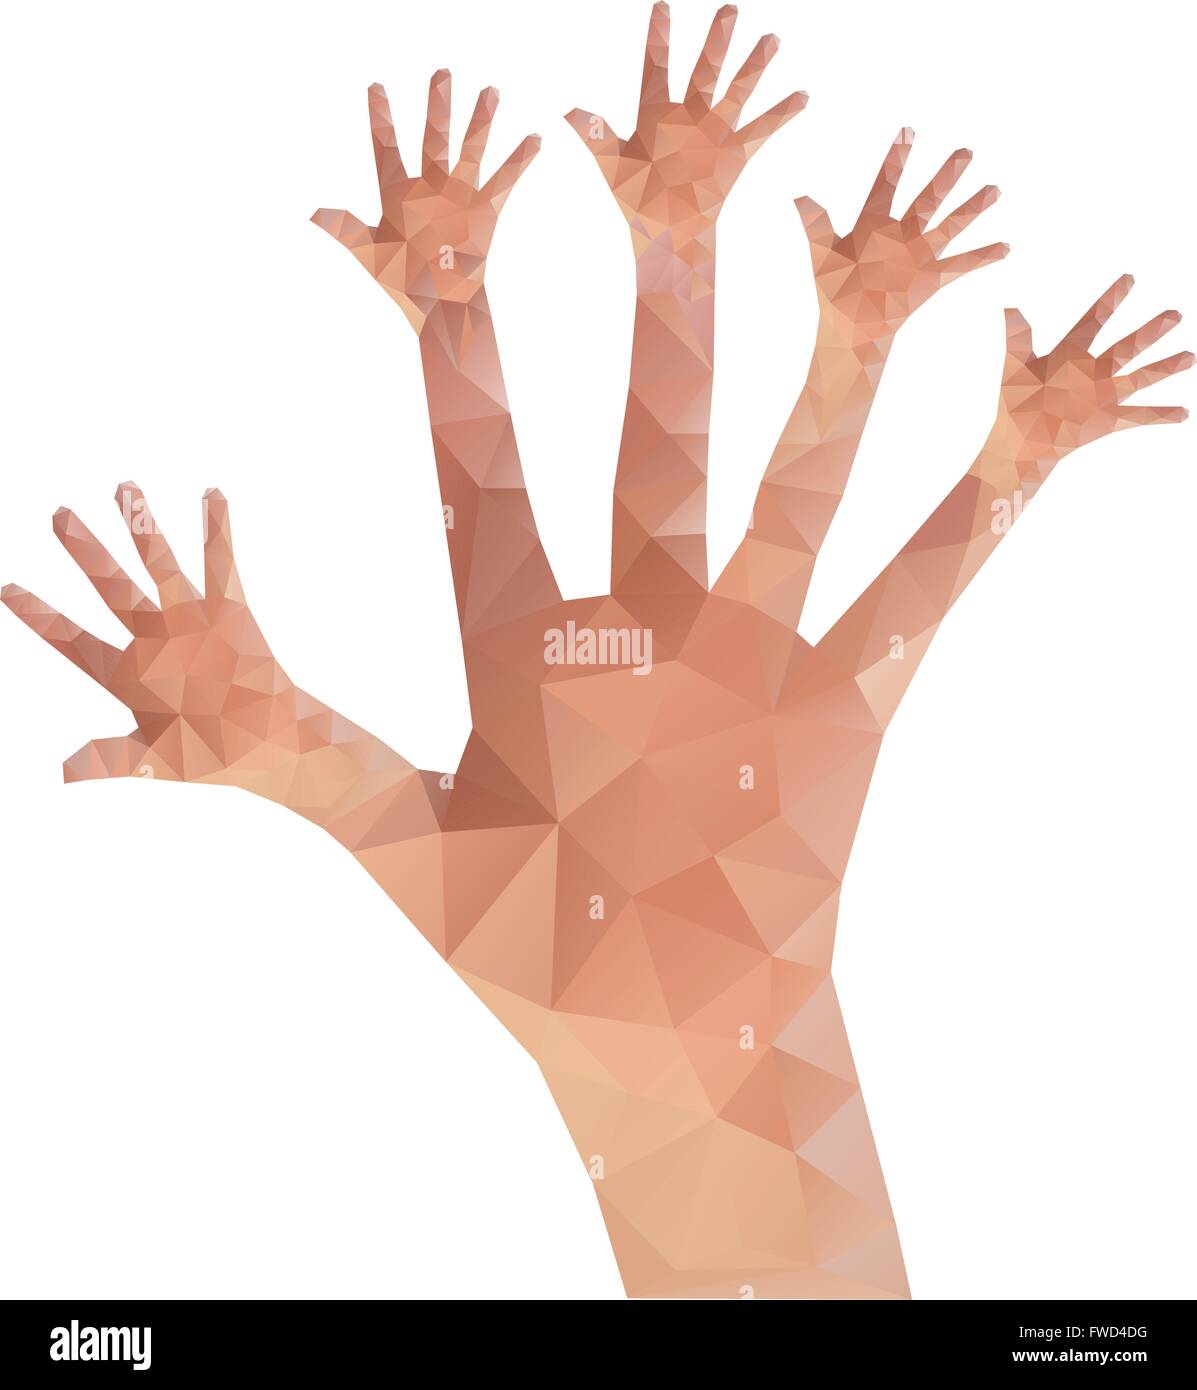 Mano Humana Mostrando Cinco Dedos Abiertos Ilustración Vectorial Diseño De  Etiqueta Ilustraciones svg, vectoriales, clip art vectorizado libre de  derechos. Image 95503875